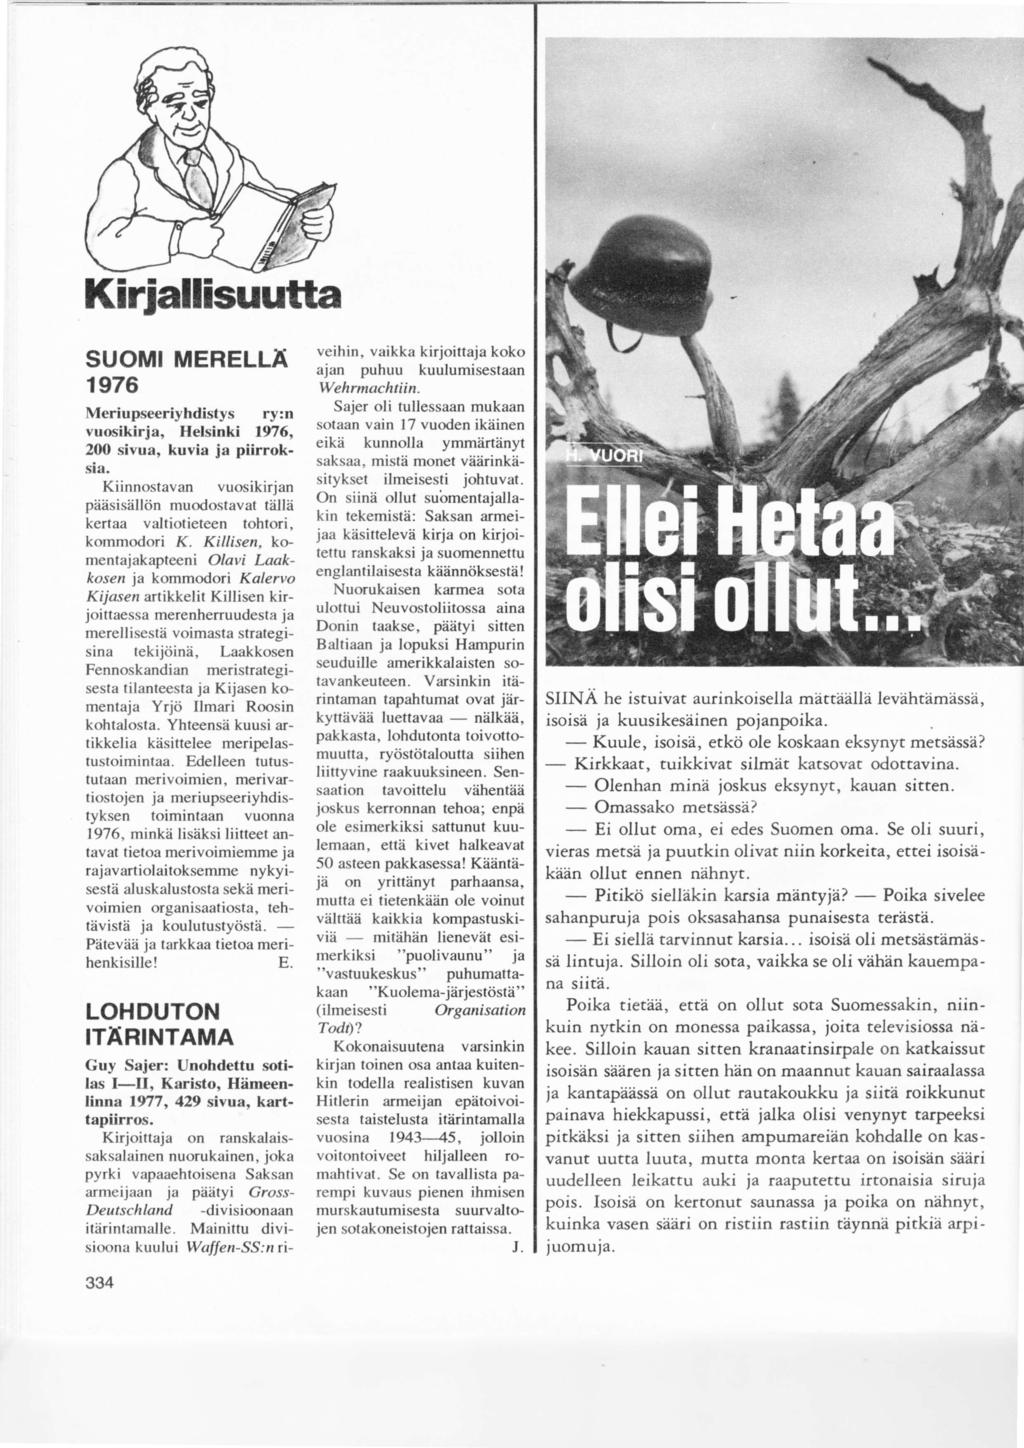 Kiriallisuutta SUOMI MERELLÄ 1 976 Meriupseeriyhdistys ry:n vuosikirja, Helsinki 1976, 200 sivua, kuvia ja piirroksia.